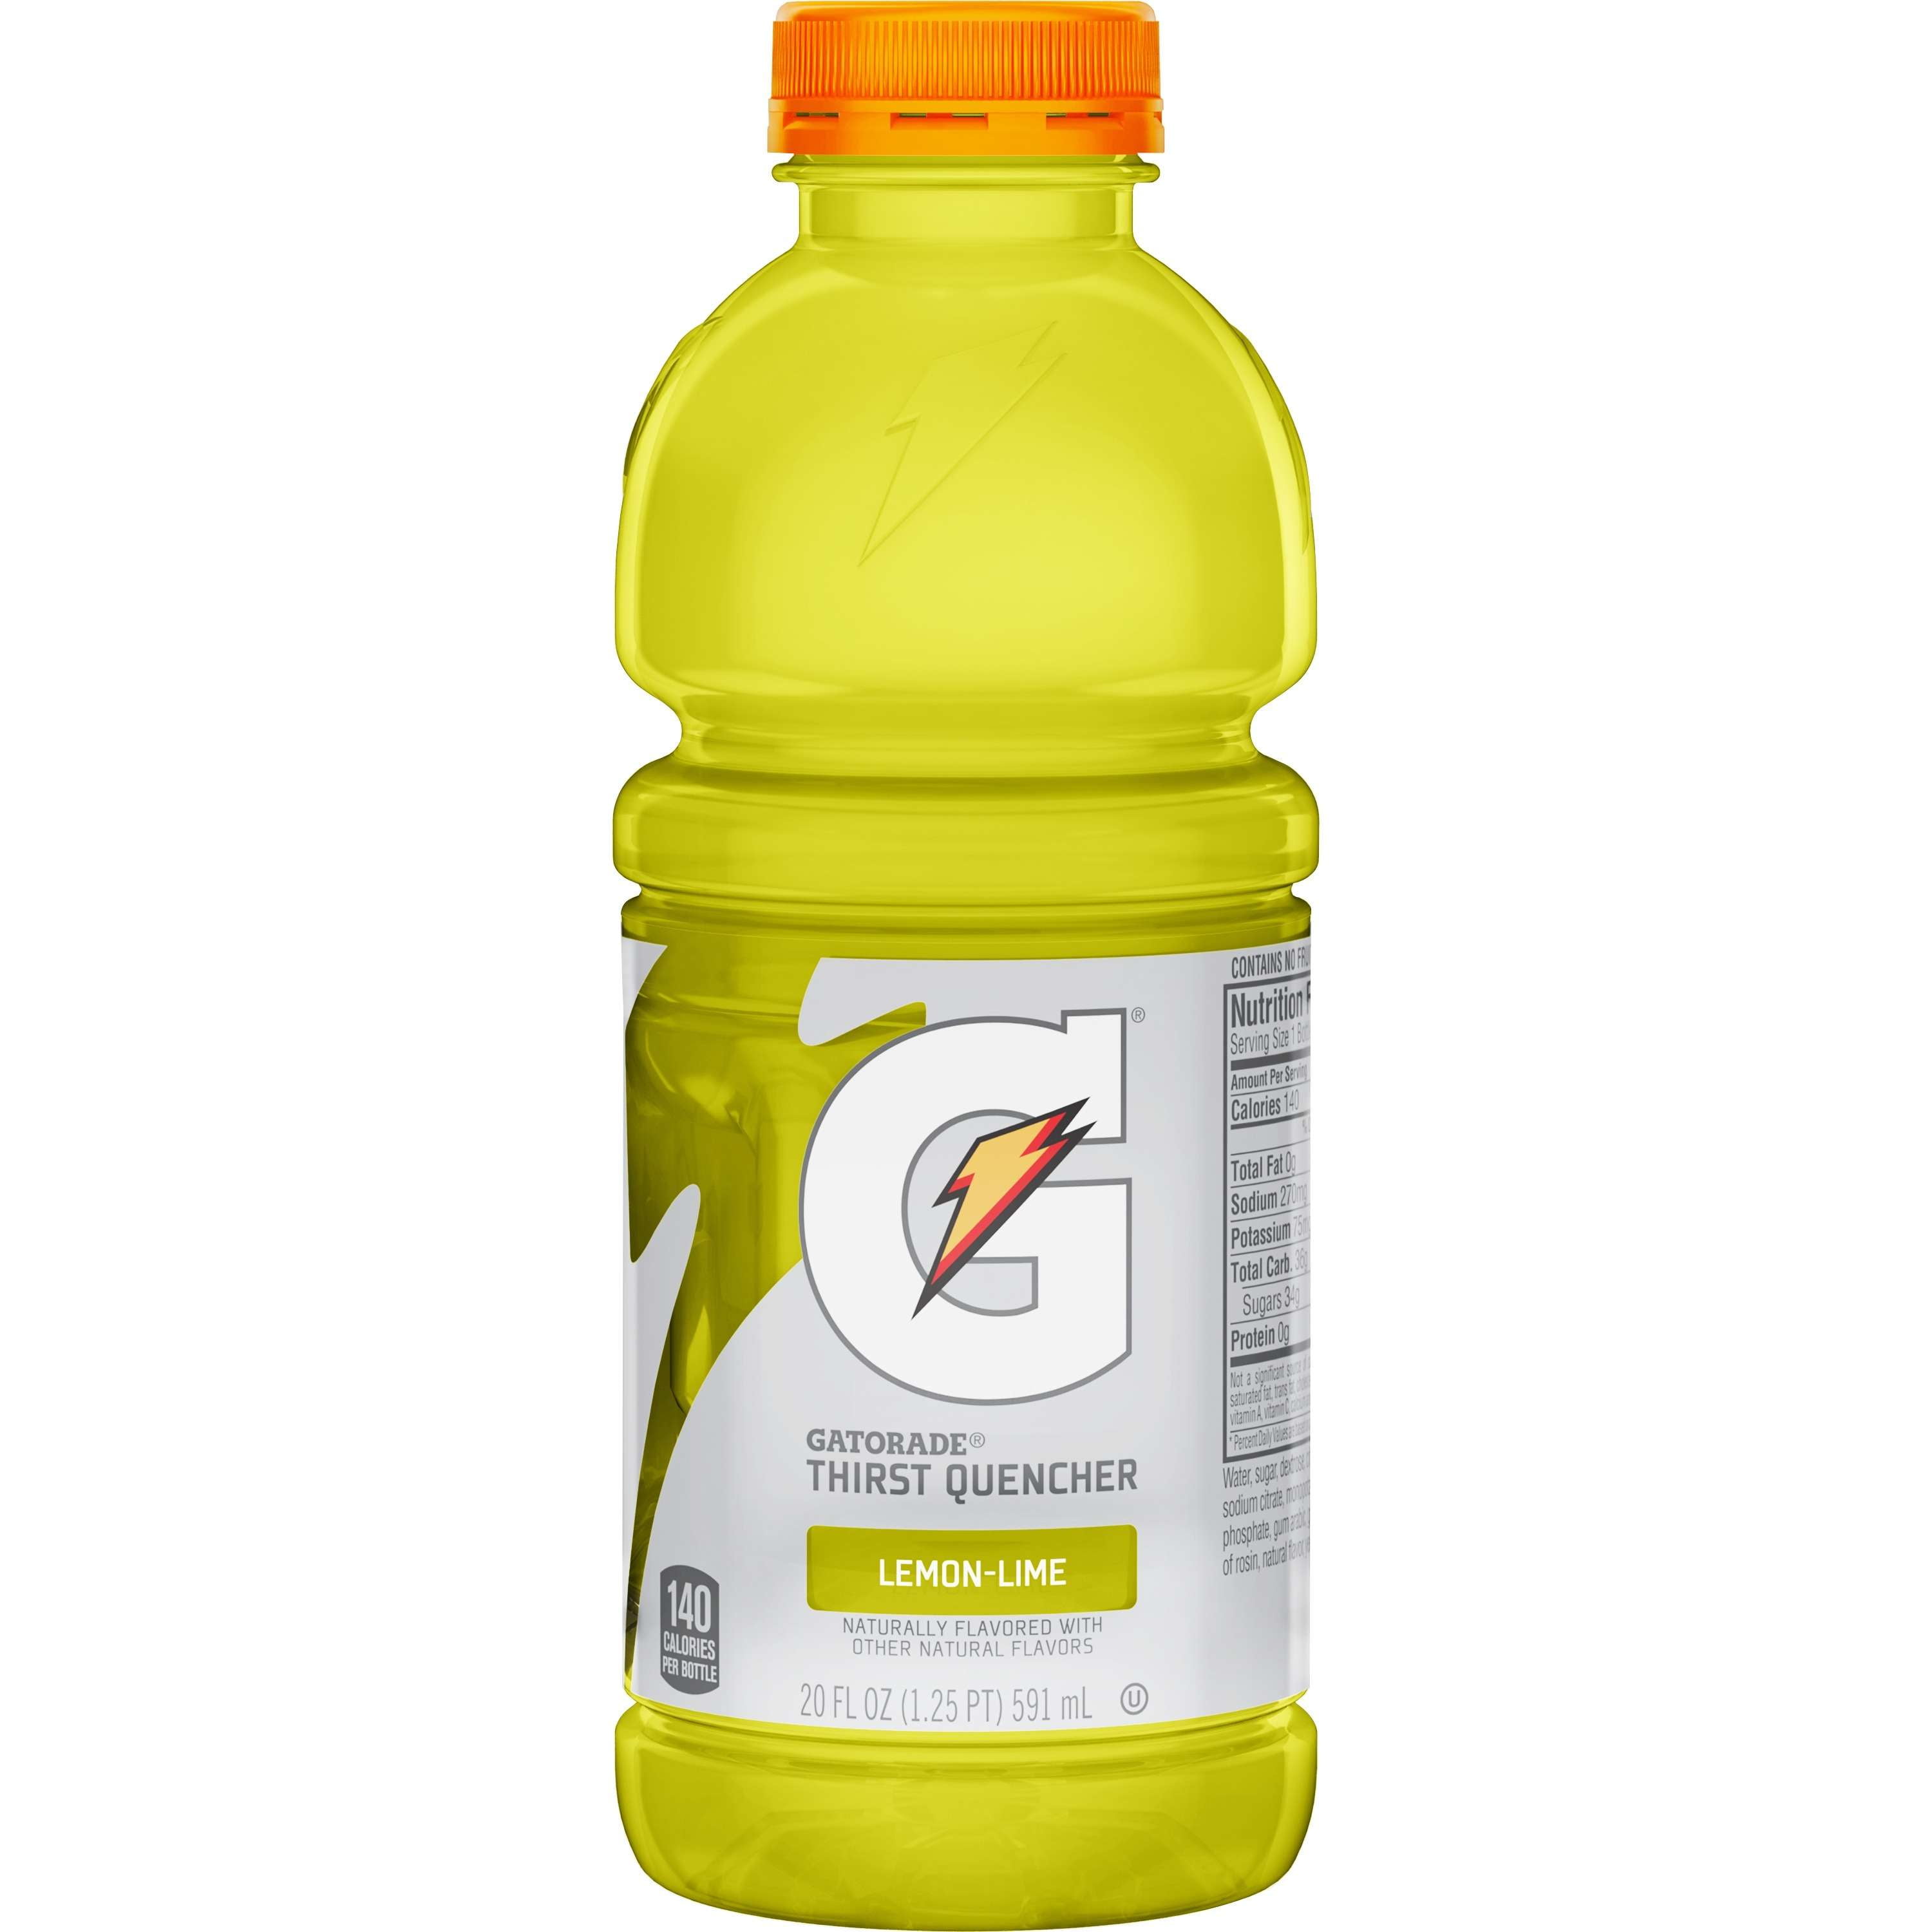 Gatorade 20 Oz Bottle - Holy Land Grocery